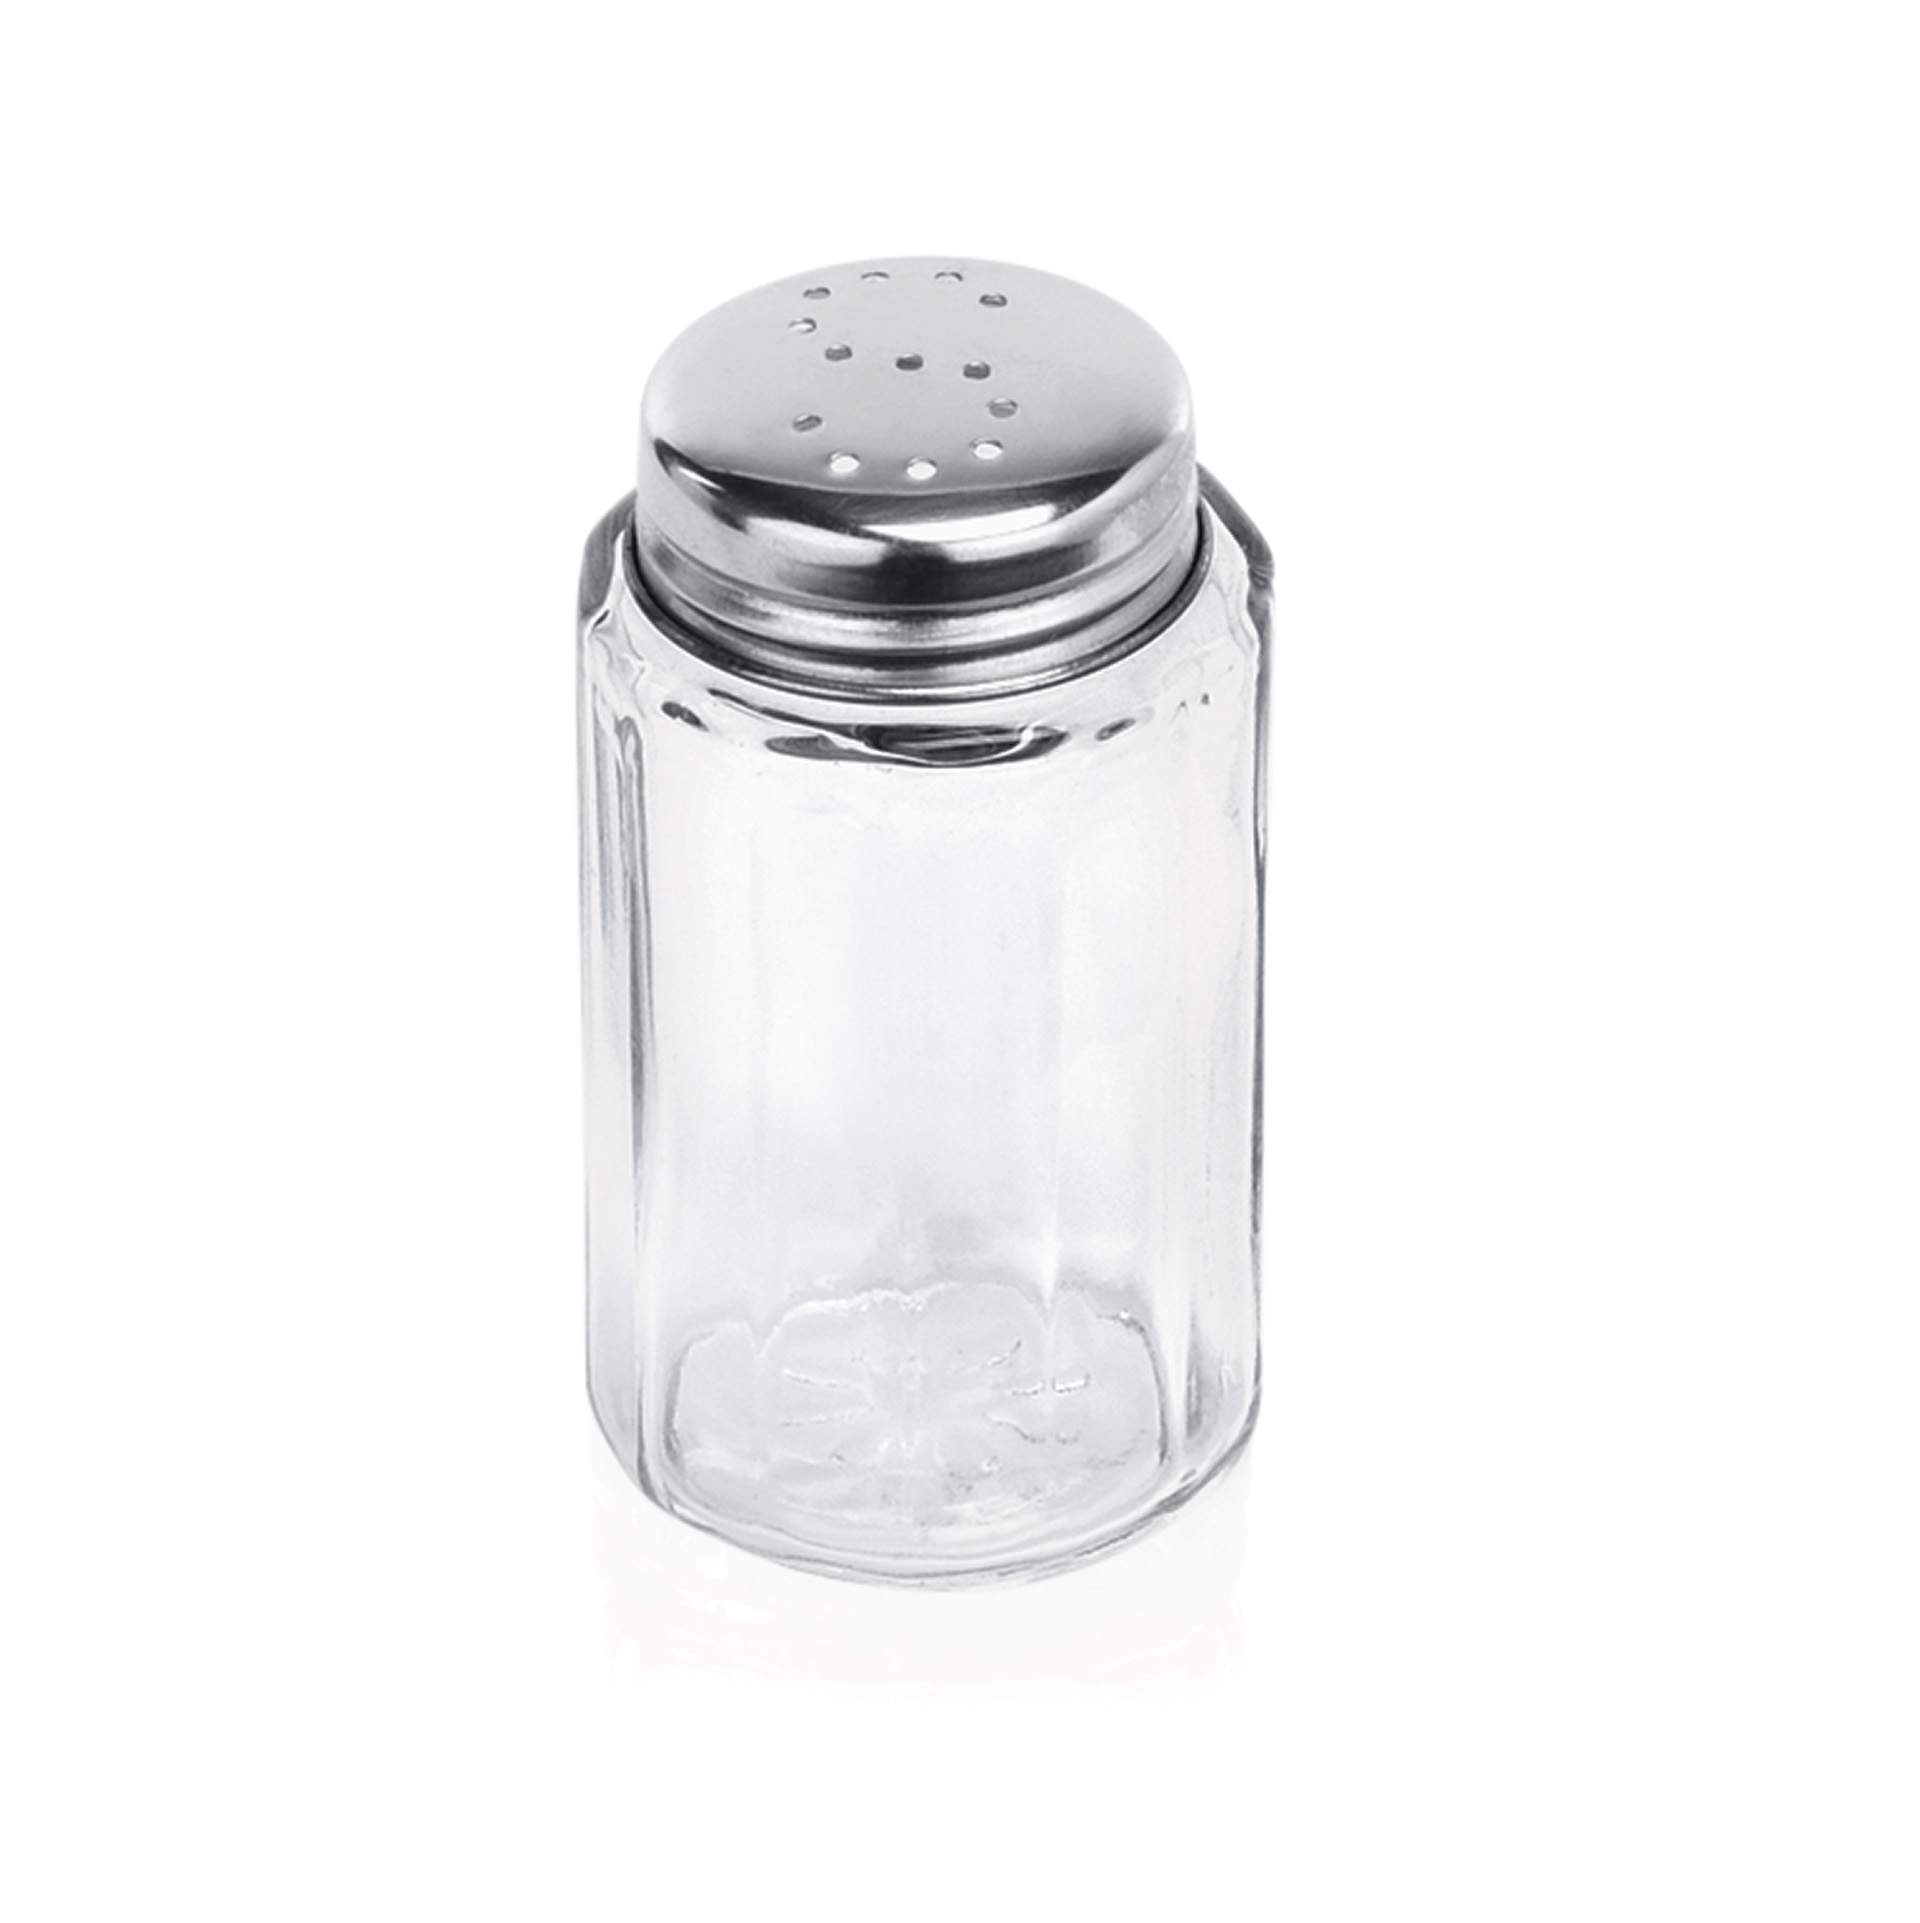 Salzstreuer - gerade Form - Abm. 7,0 cm - Ø 4,0 cm - Glas - 1483001-A